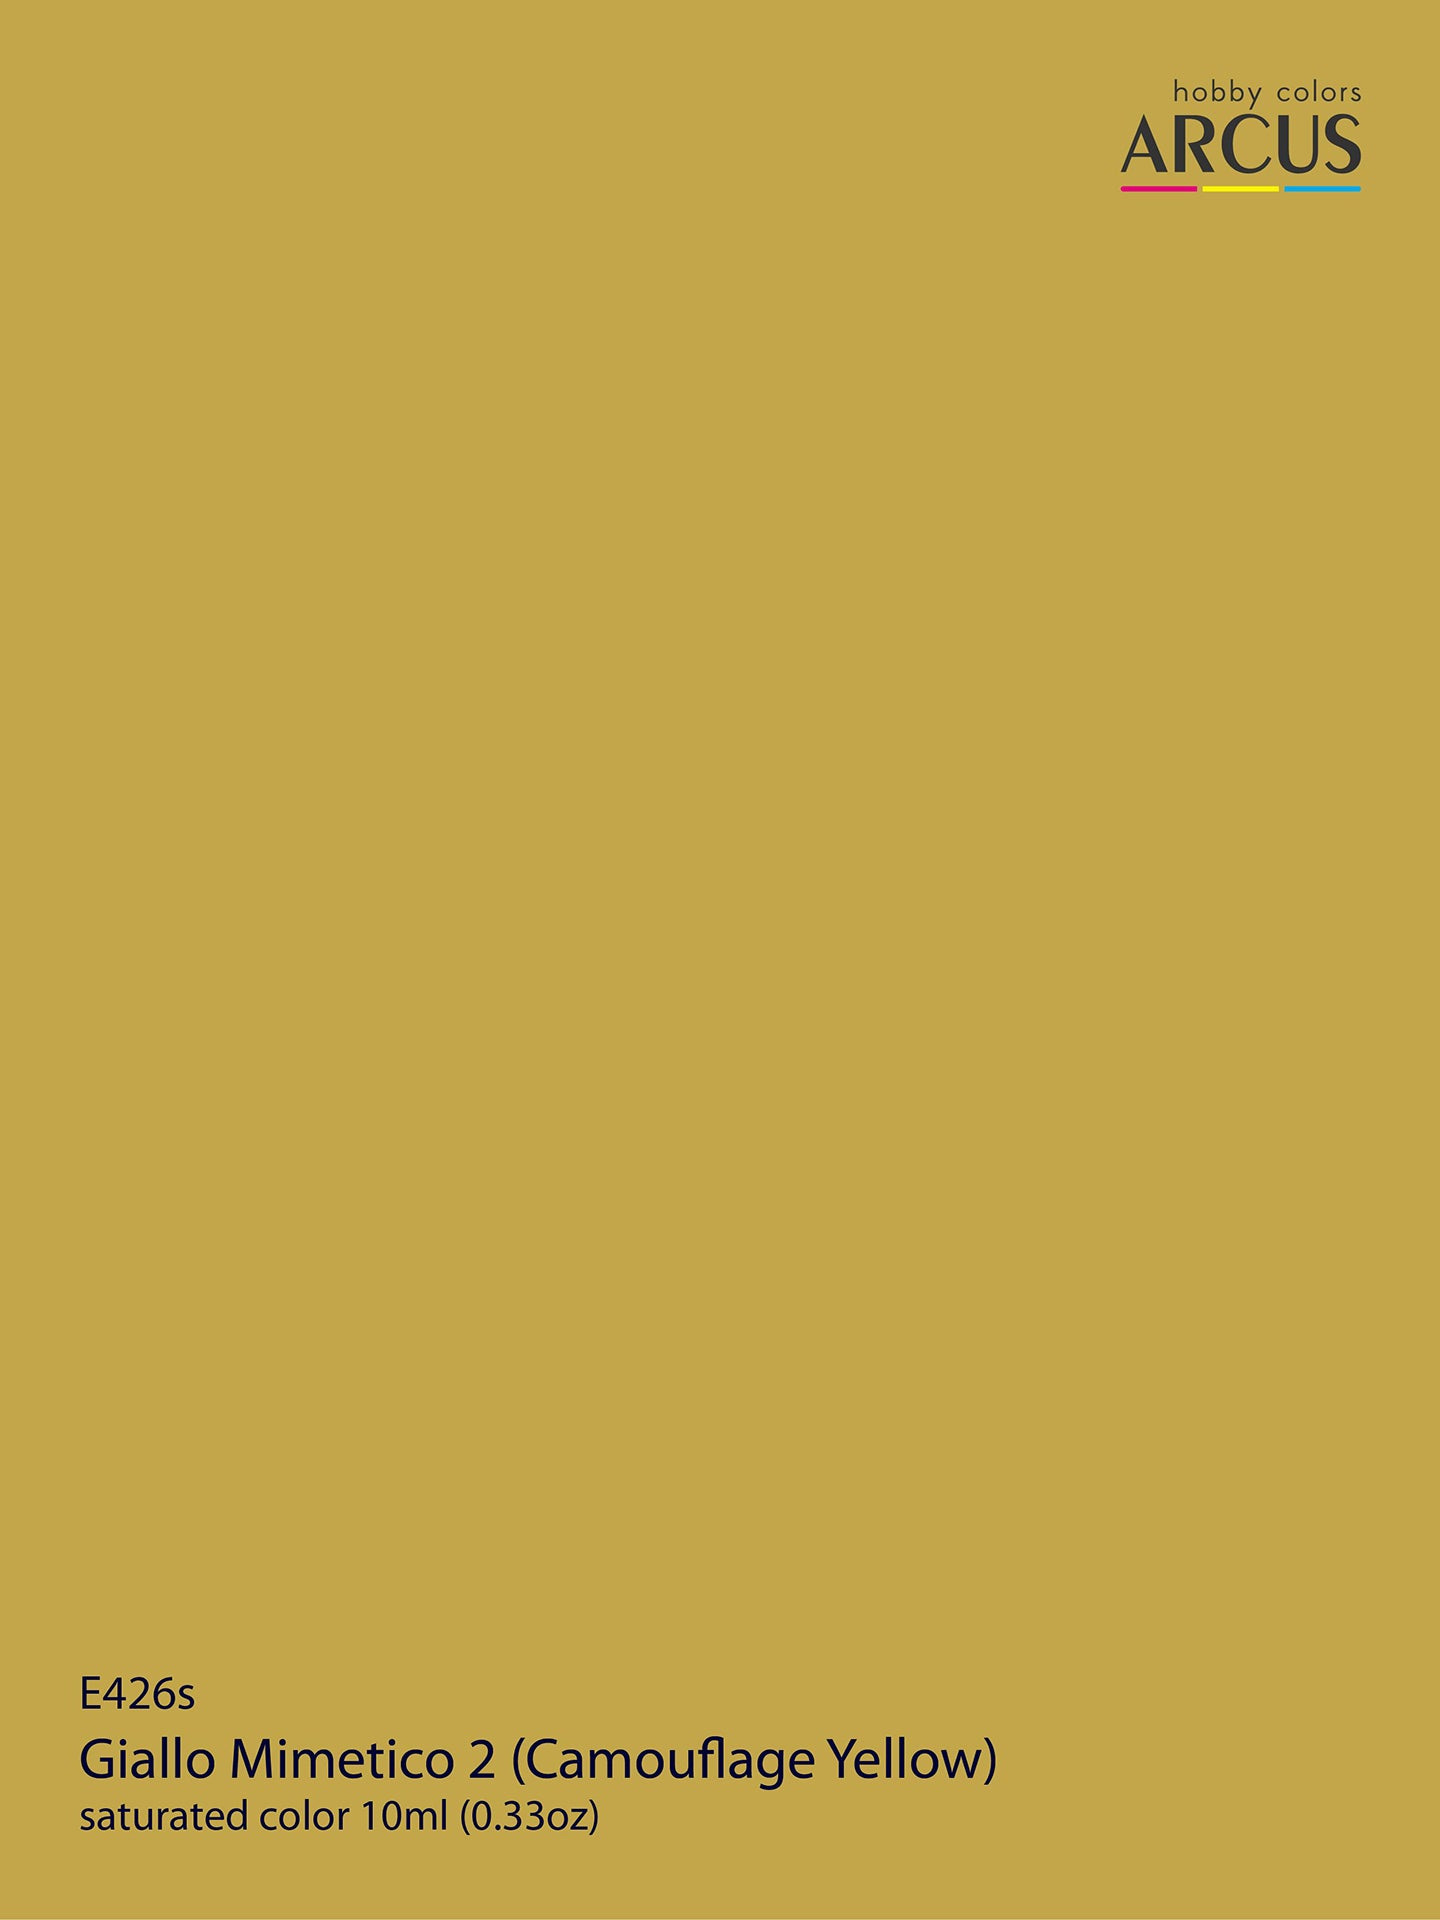 426 Giallo Mimetico 2 (Camouflage Yellow)